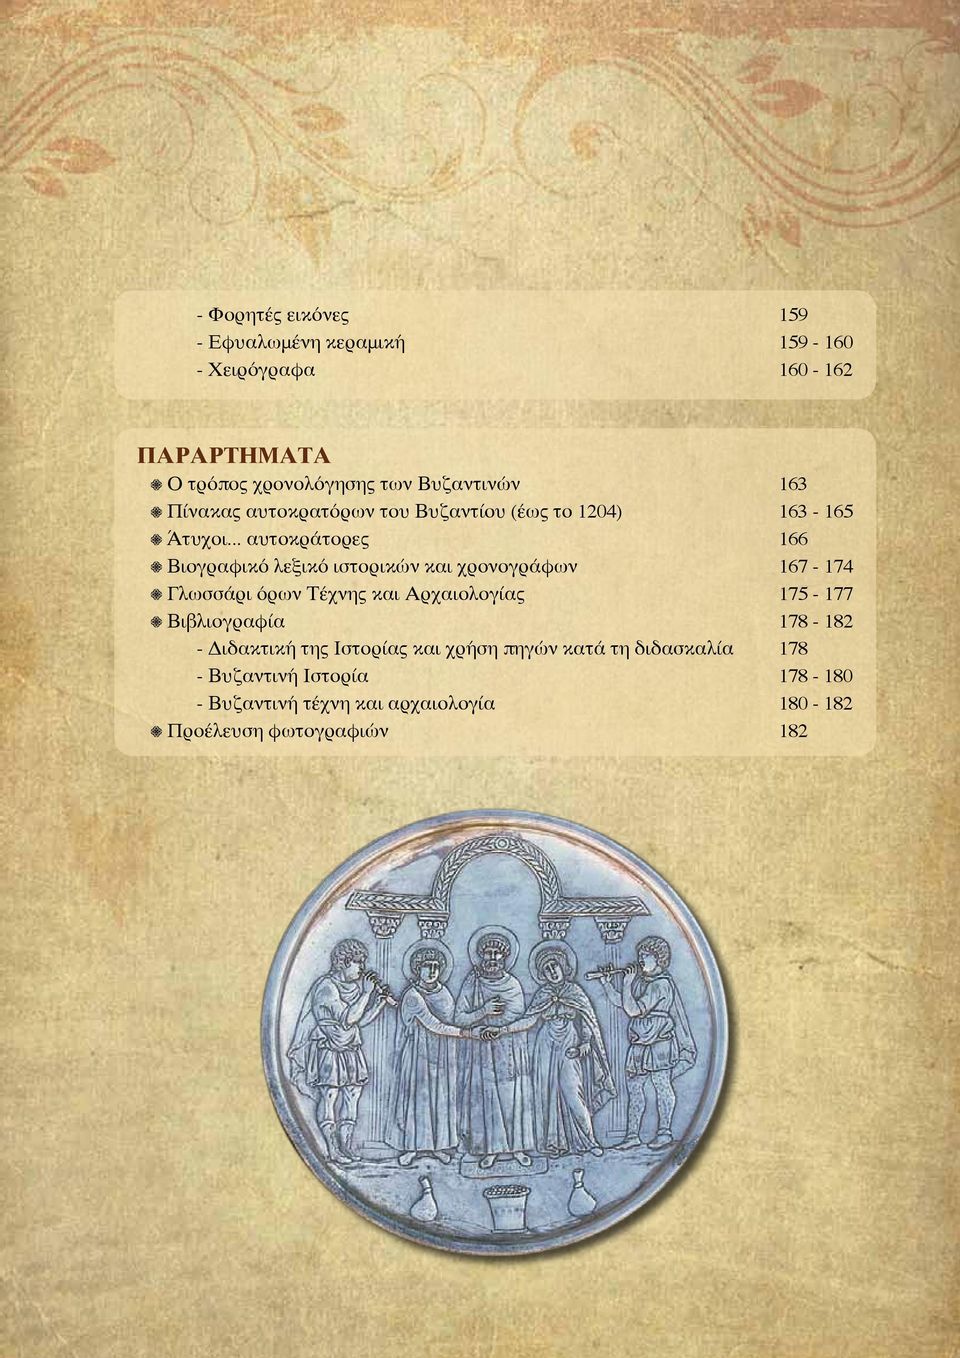 .. αυτοκράτορες 166 Βιογραφικό λεξικό ιστορικών και χρονογράφων 167-174 Γλωσσάρι όρων Τέχνης και Αρχαιολογίας 175-177